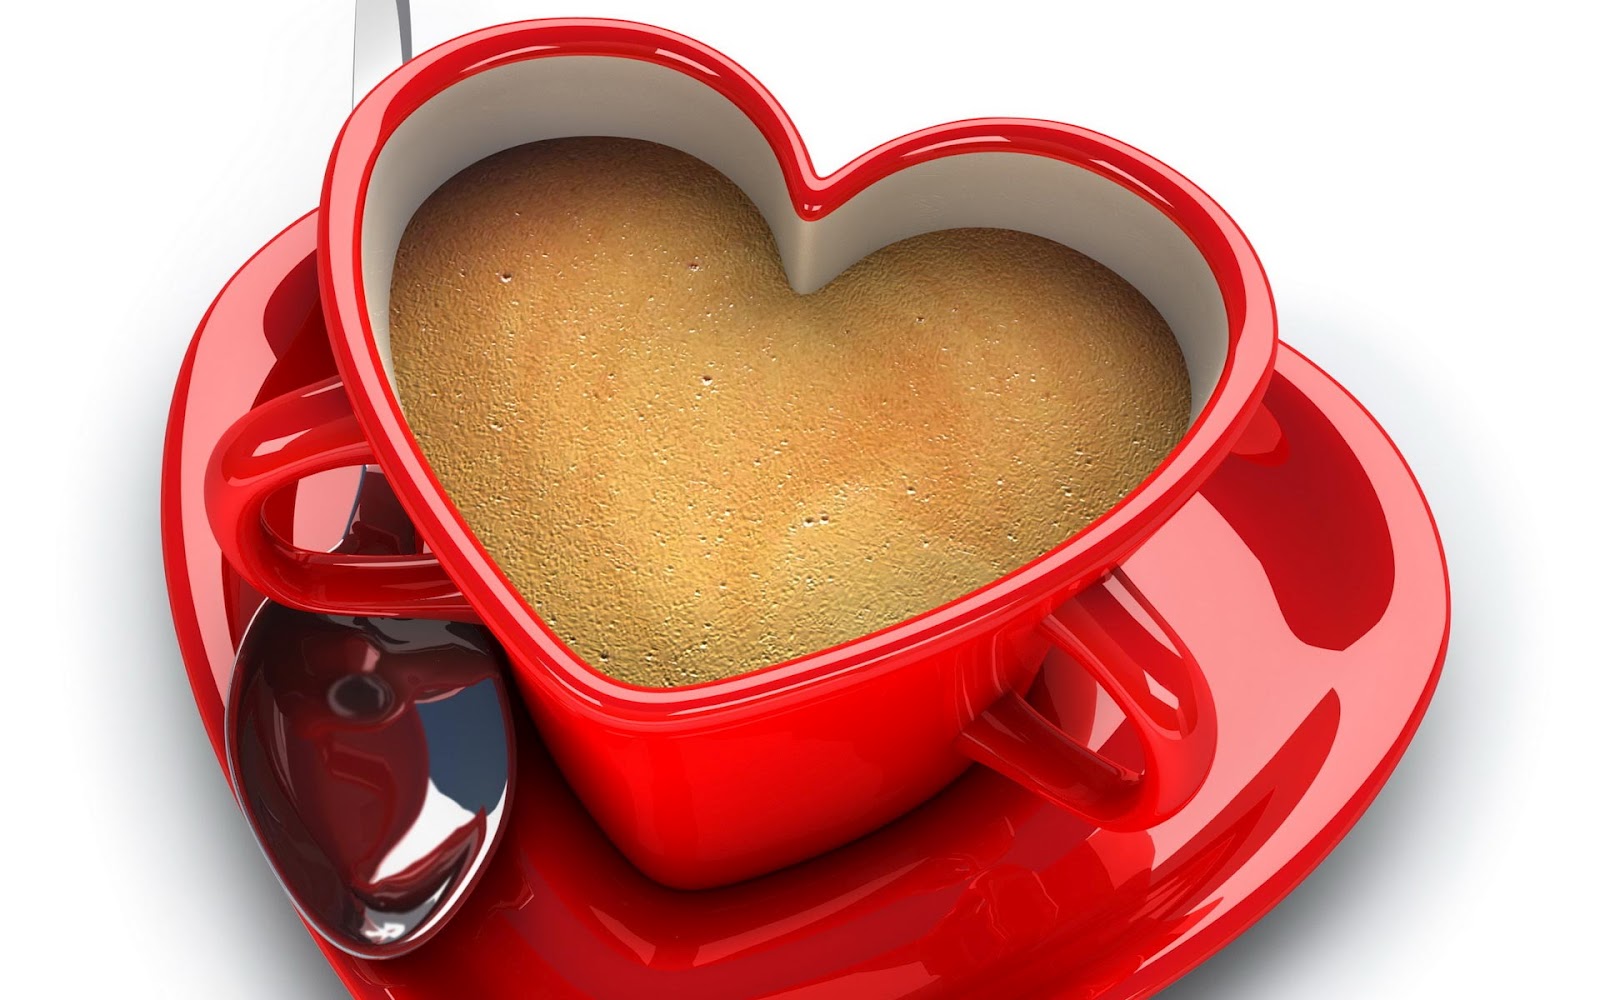 fb壁紙,カップ,コーヒーカップ,心臓,カップ,愛